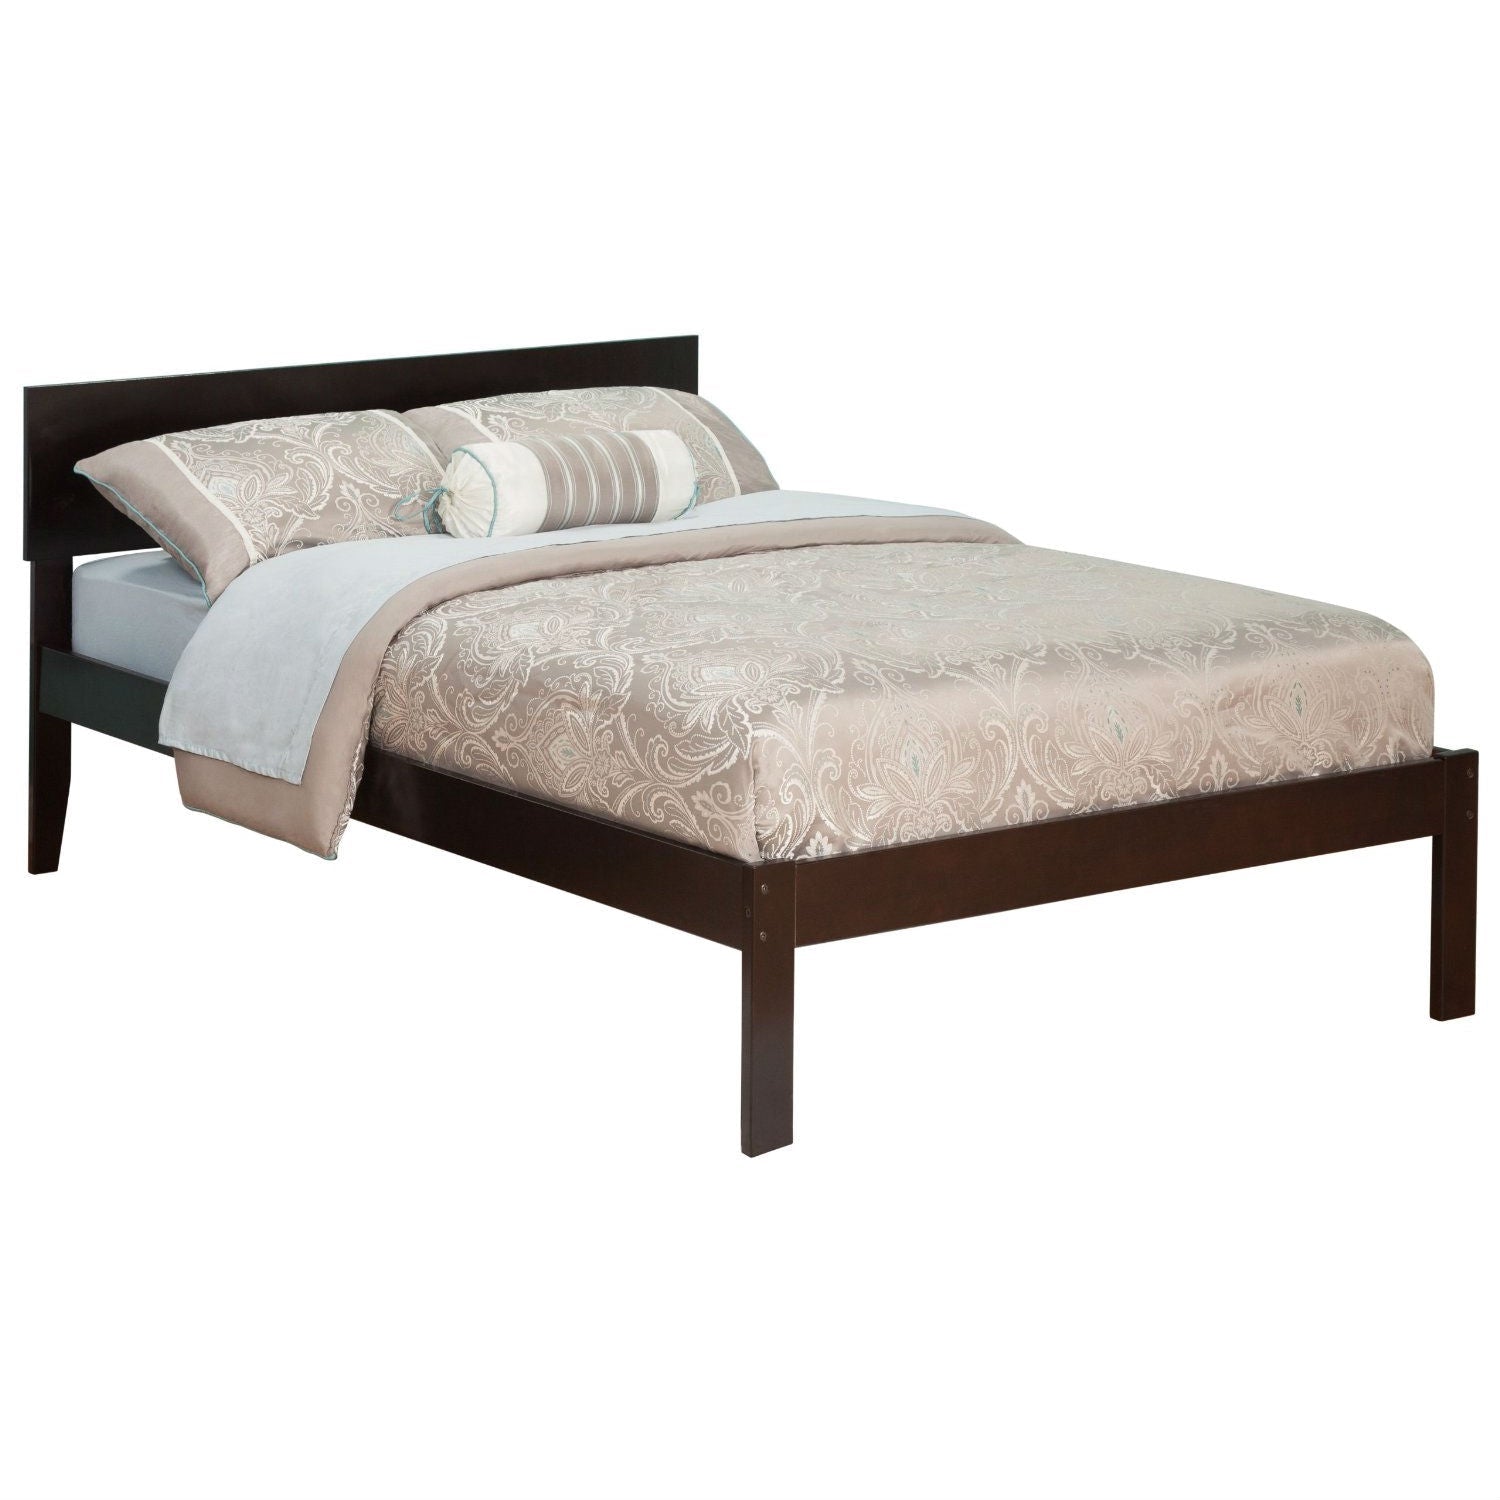 Bedroom > Bed Frames > Platform Beds - Full Size Platform Bed With Headboard In Espresso Wood Finish